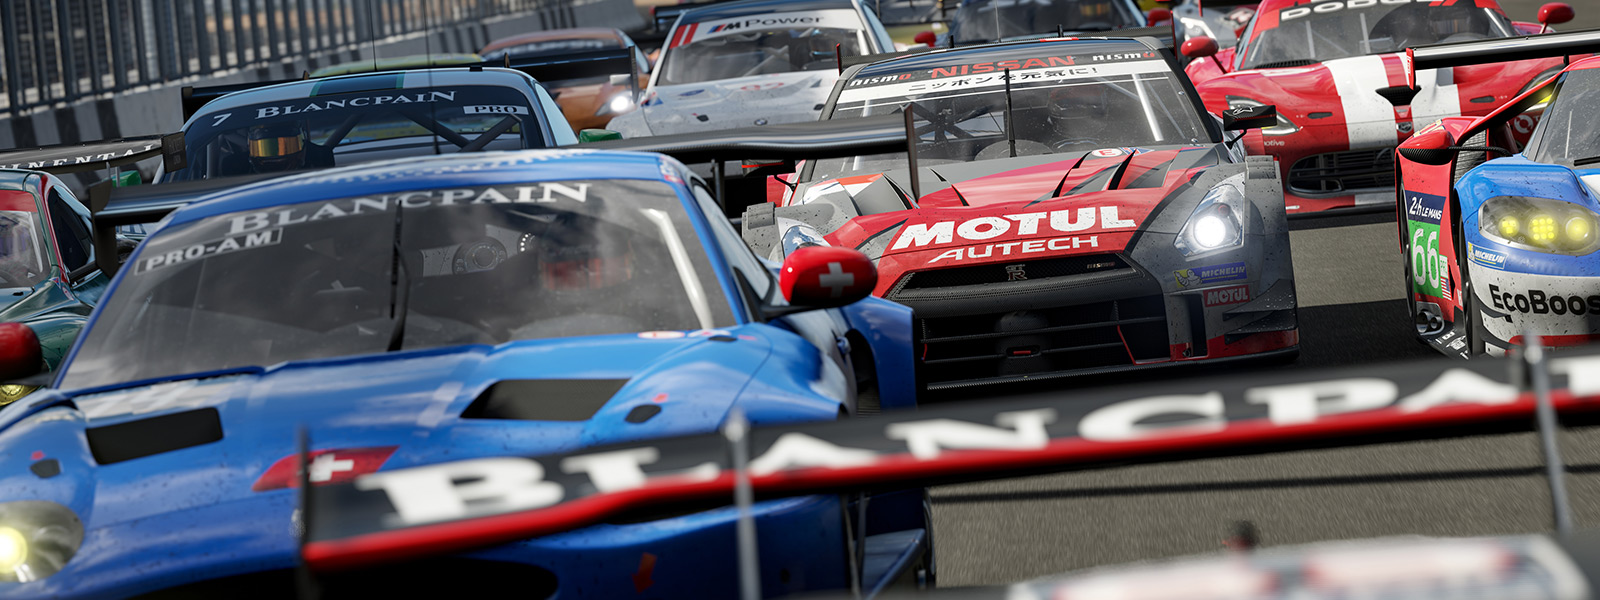 Vue de face de la ligne de départ d'une course Forza du jeu Forza Motorsport 7